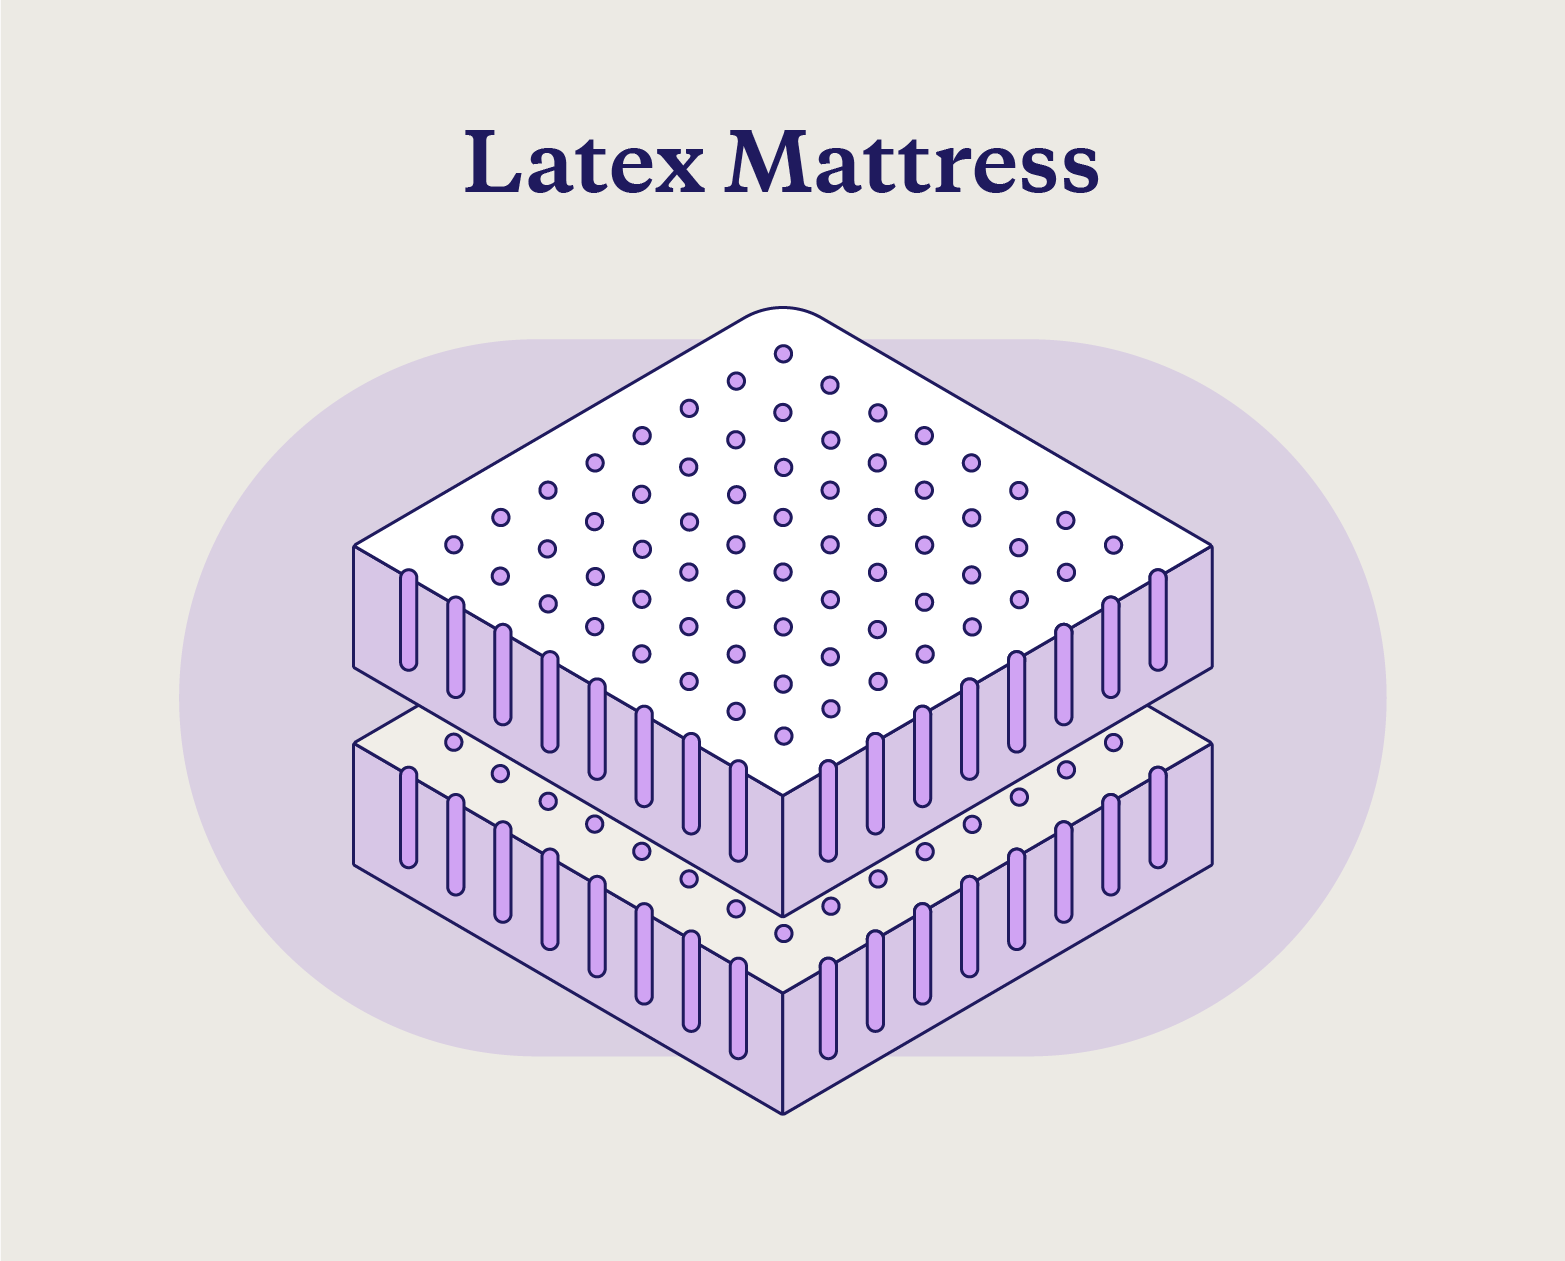 The makeup of a latex mattress